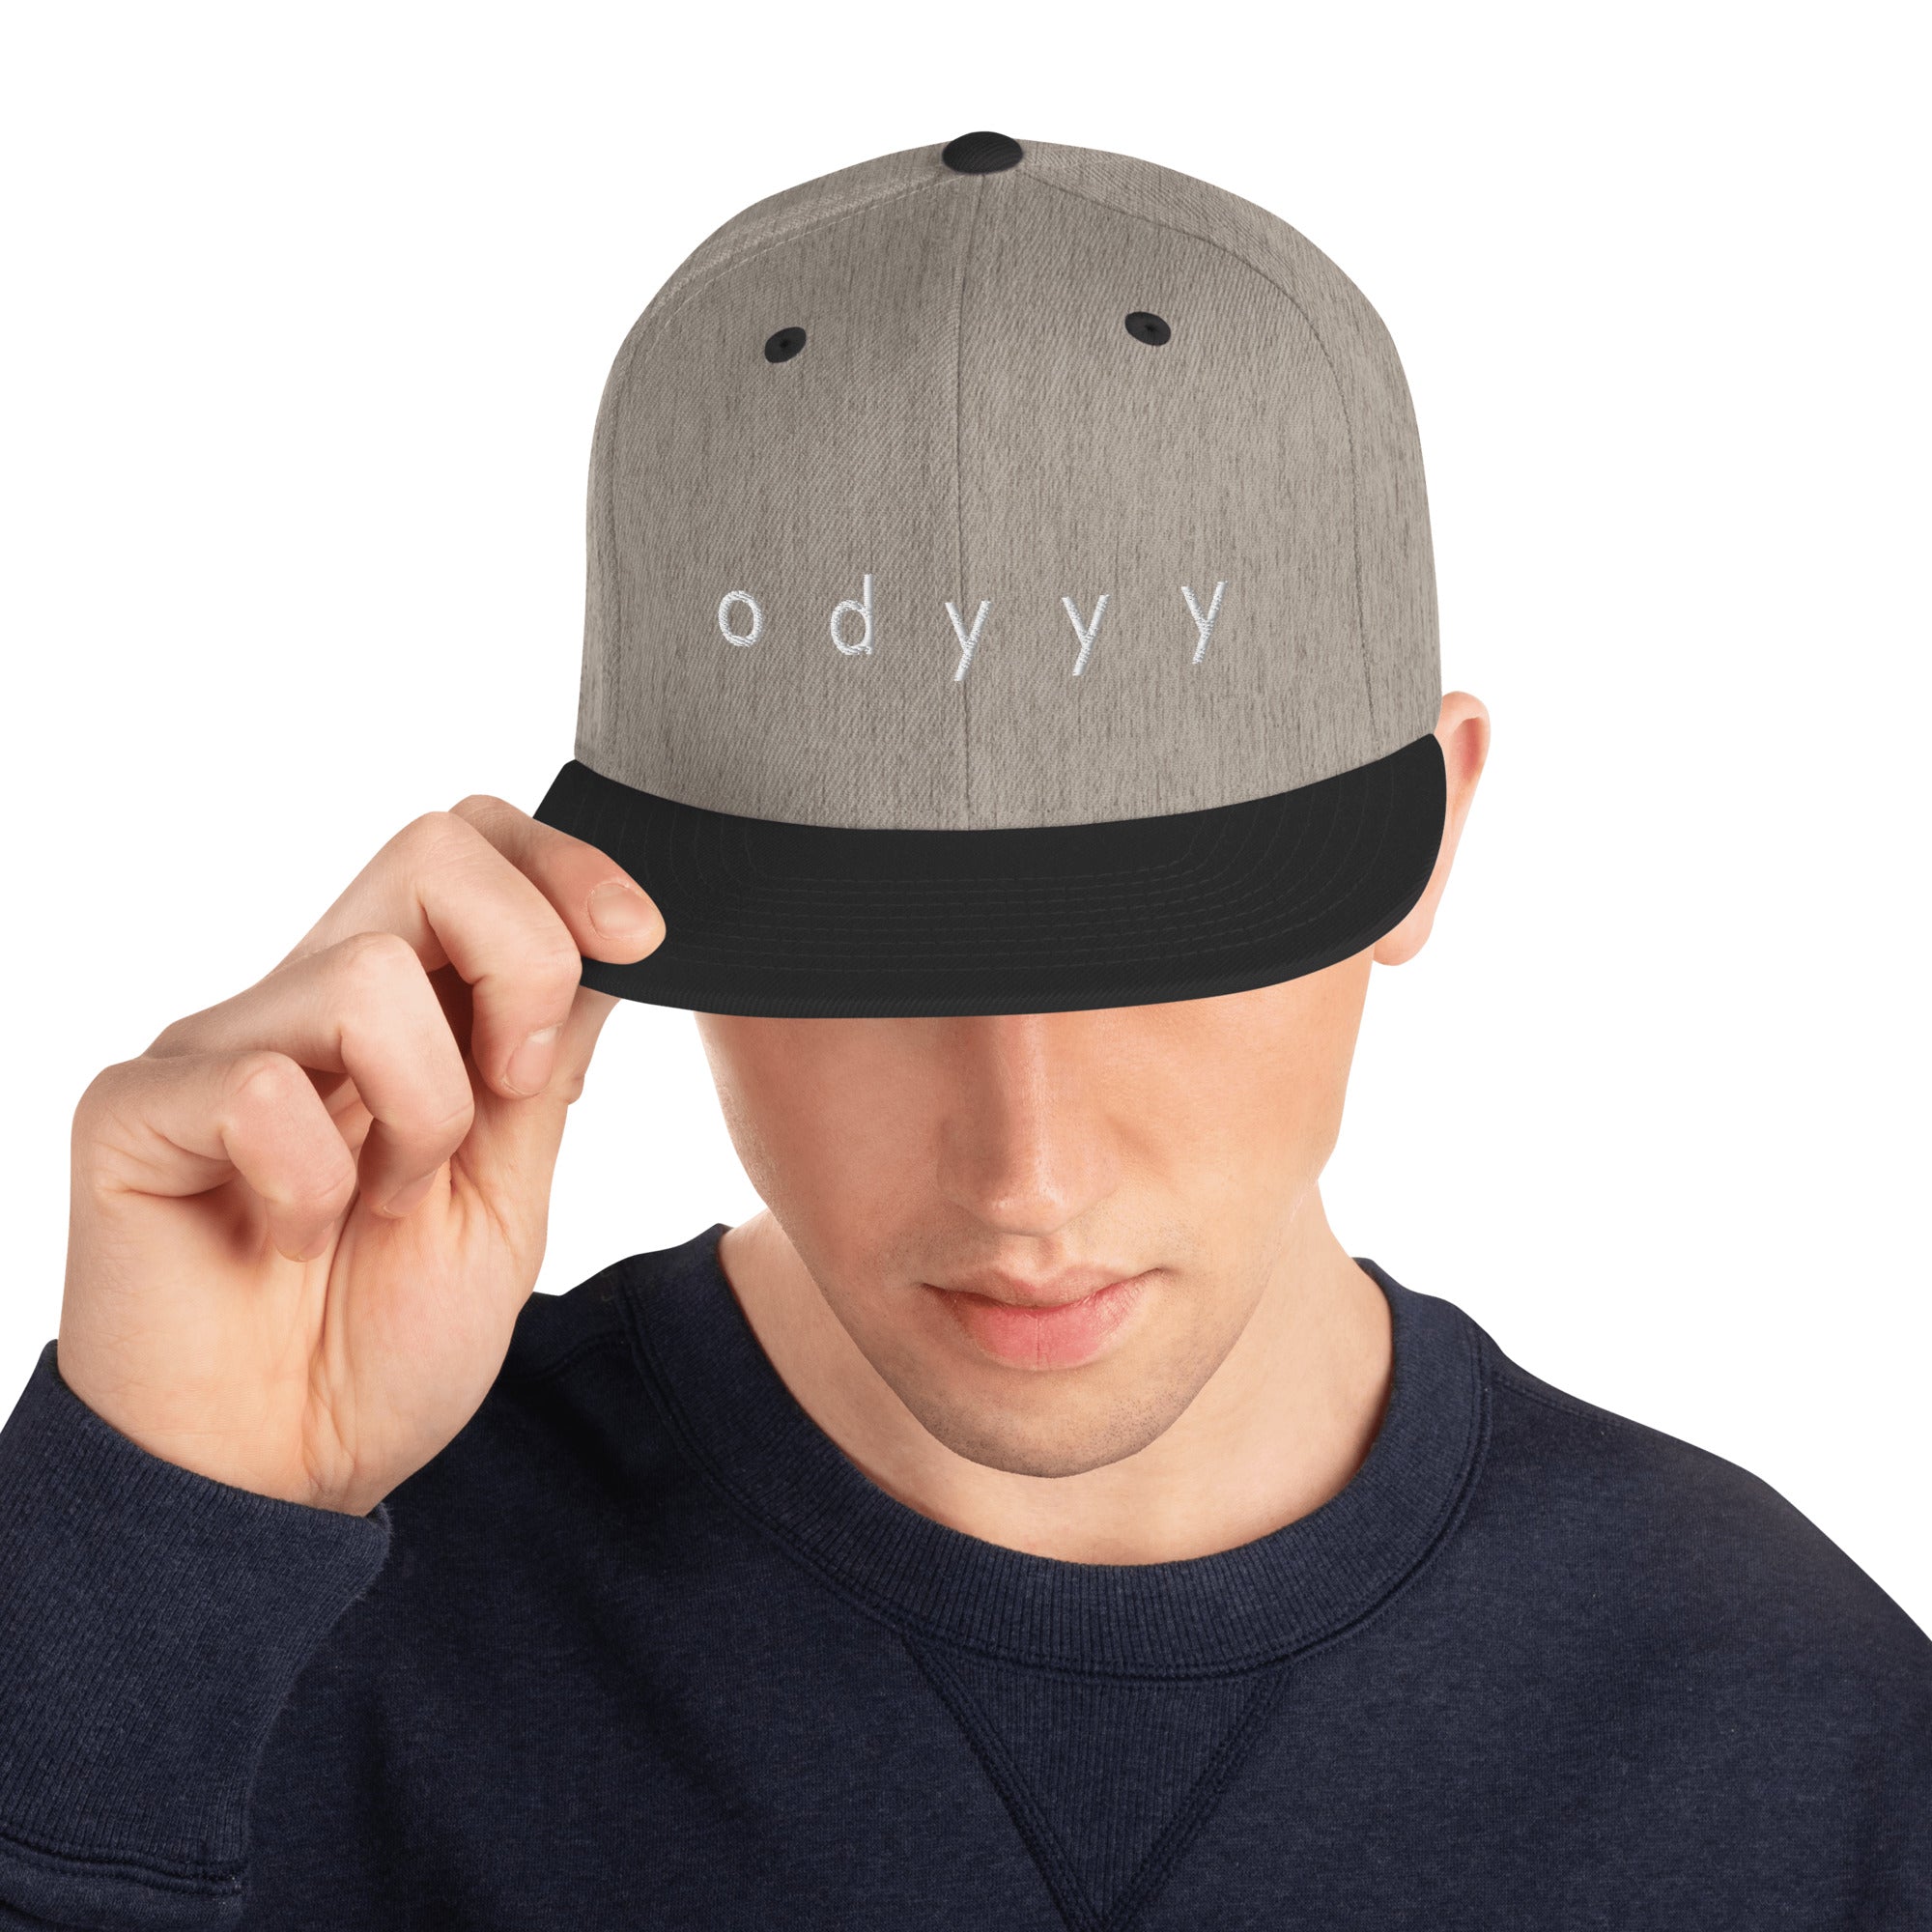 Odyyy's snapback hat